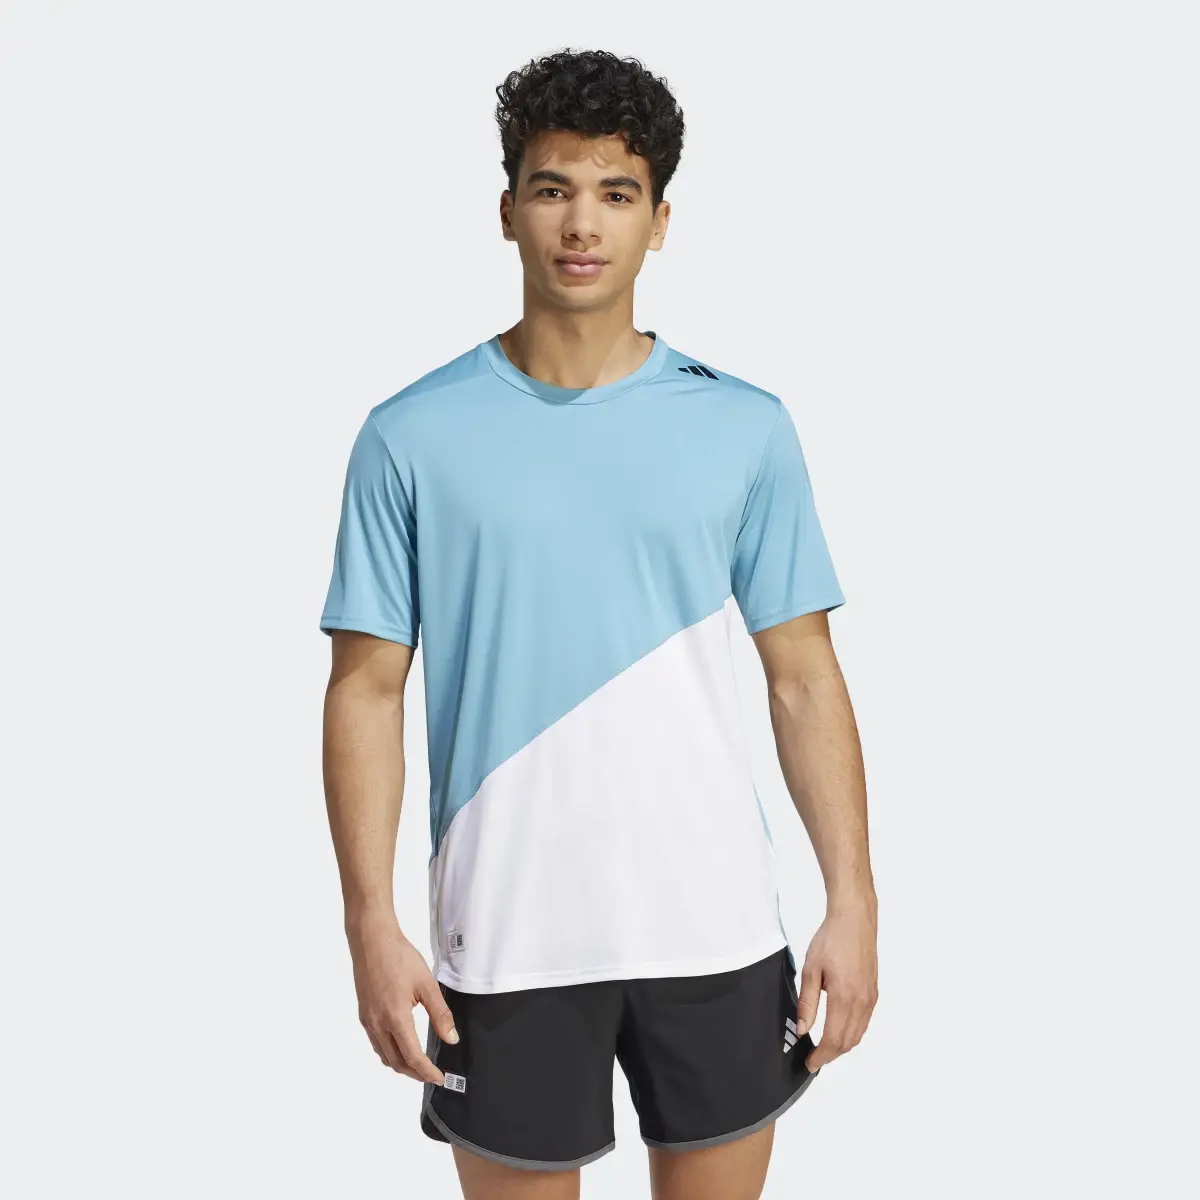 Adidas T-shirt de running Made to be Remade. 2